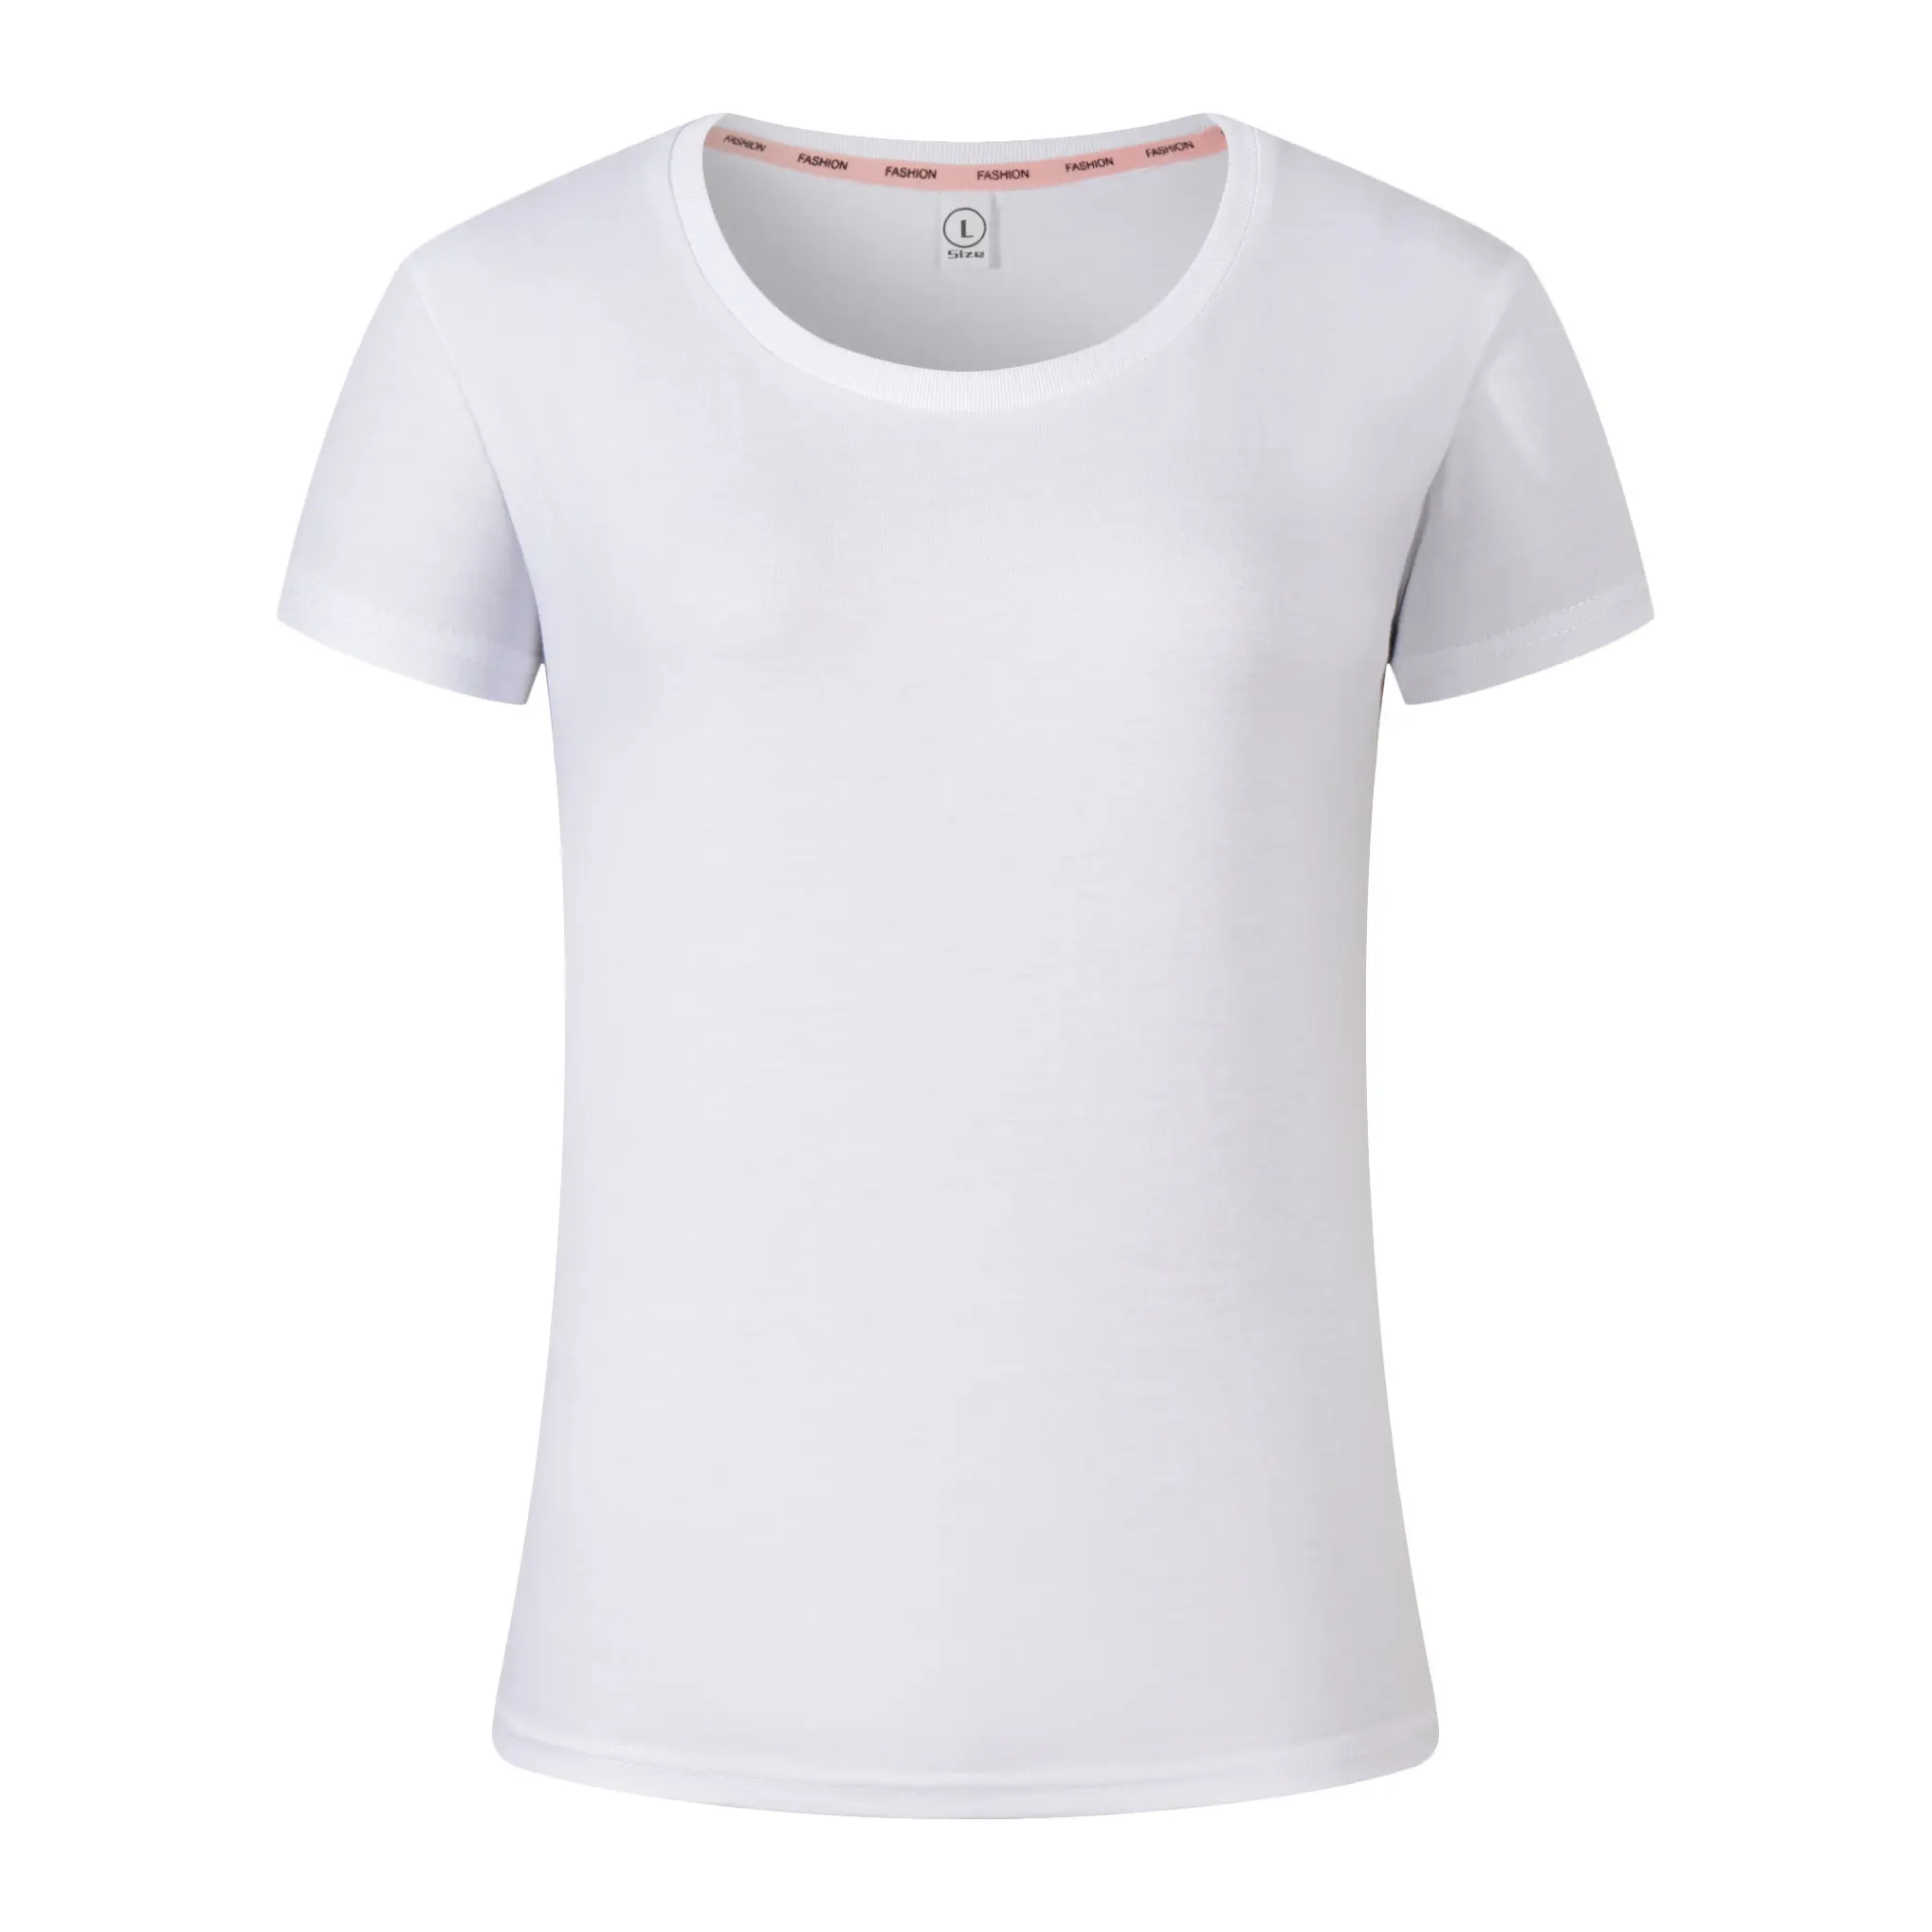 고품질 승진 형식 여자 셔츠 공백 백색 면 인쇄 주문 t-셔츠